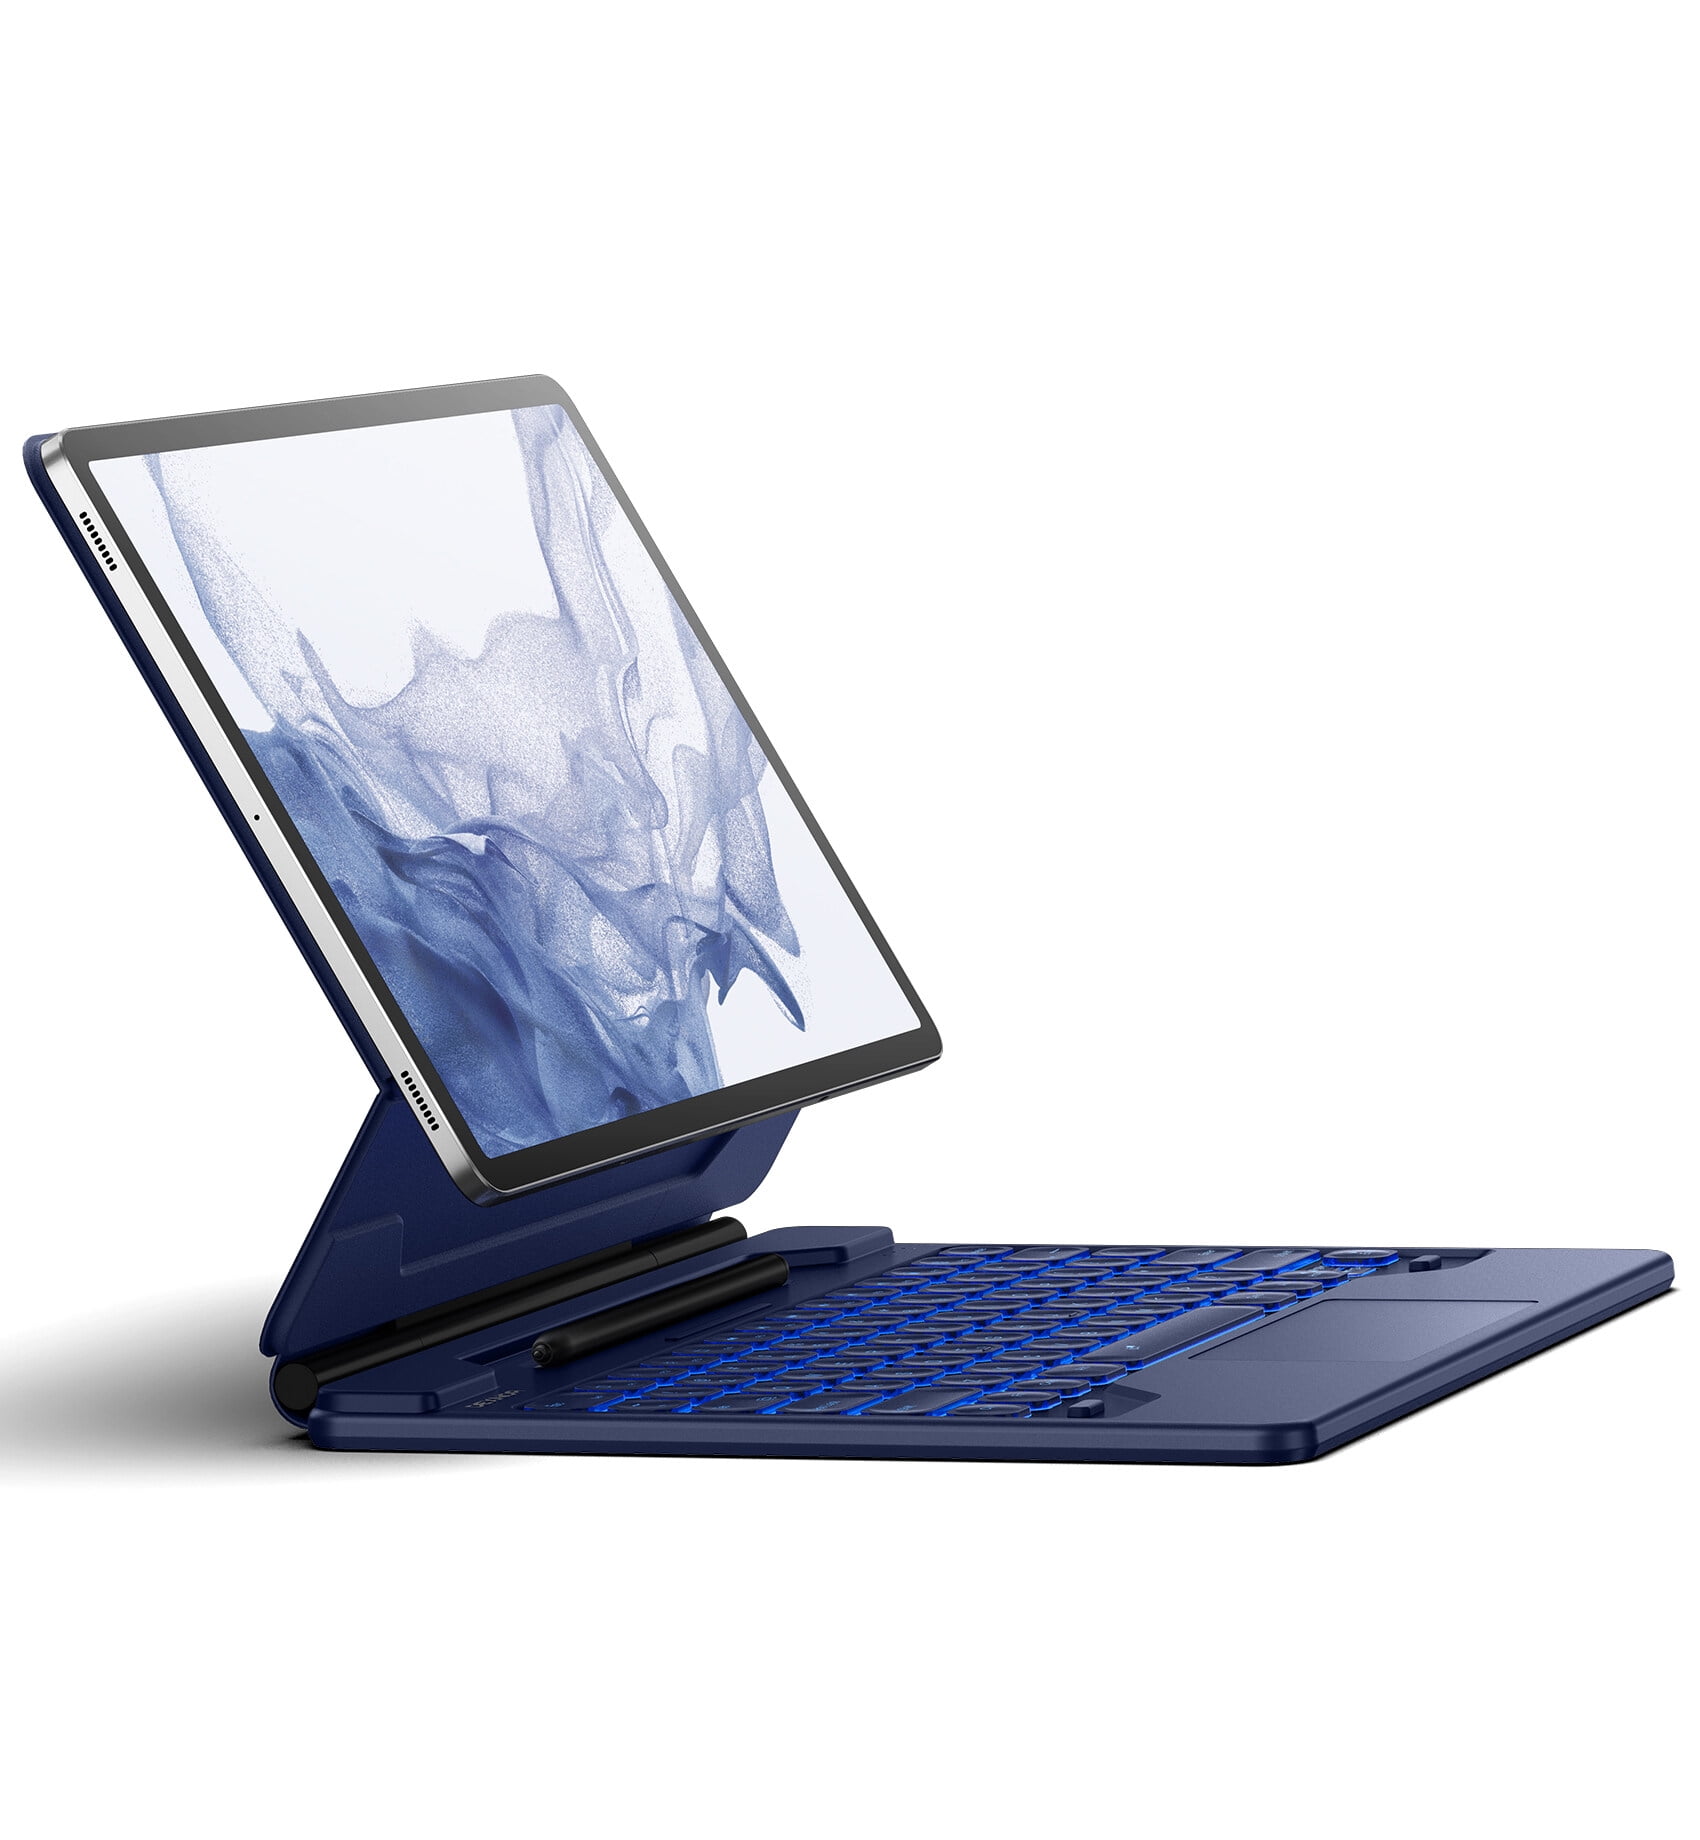 Fundas con teclado para tablet Samsung Galaxy Tab S7